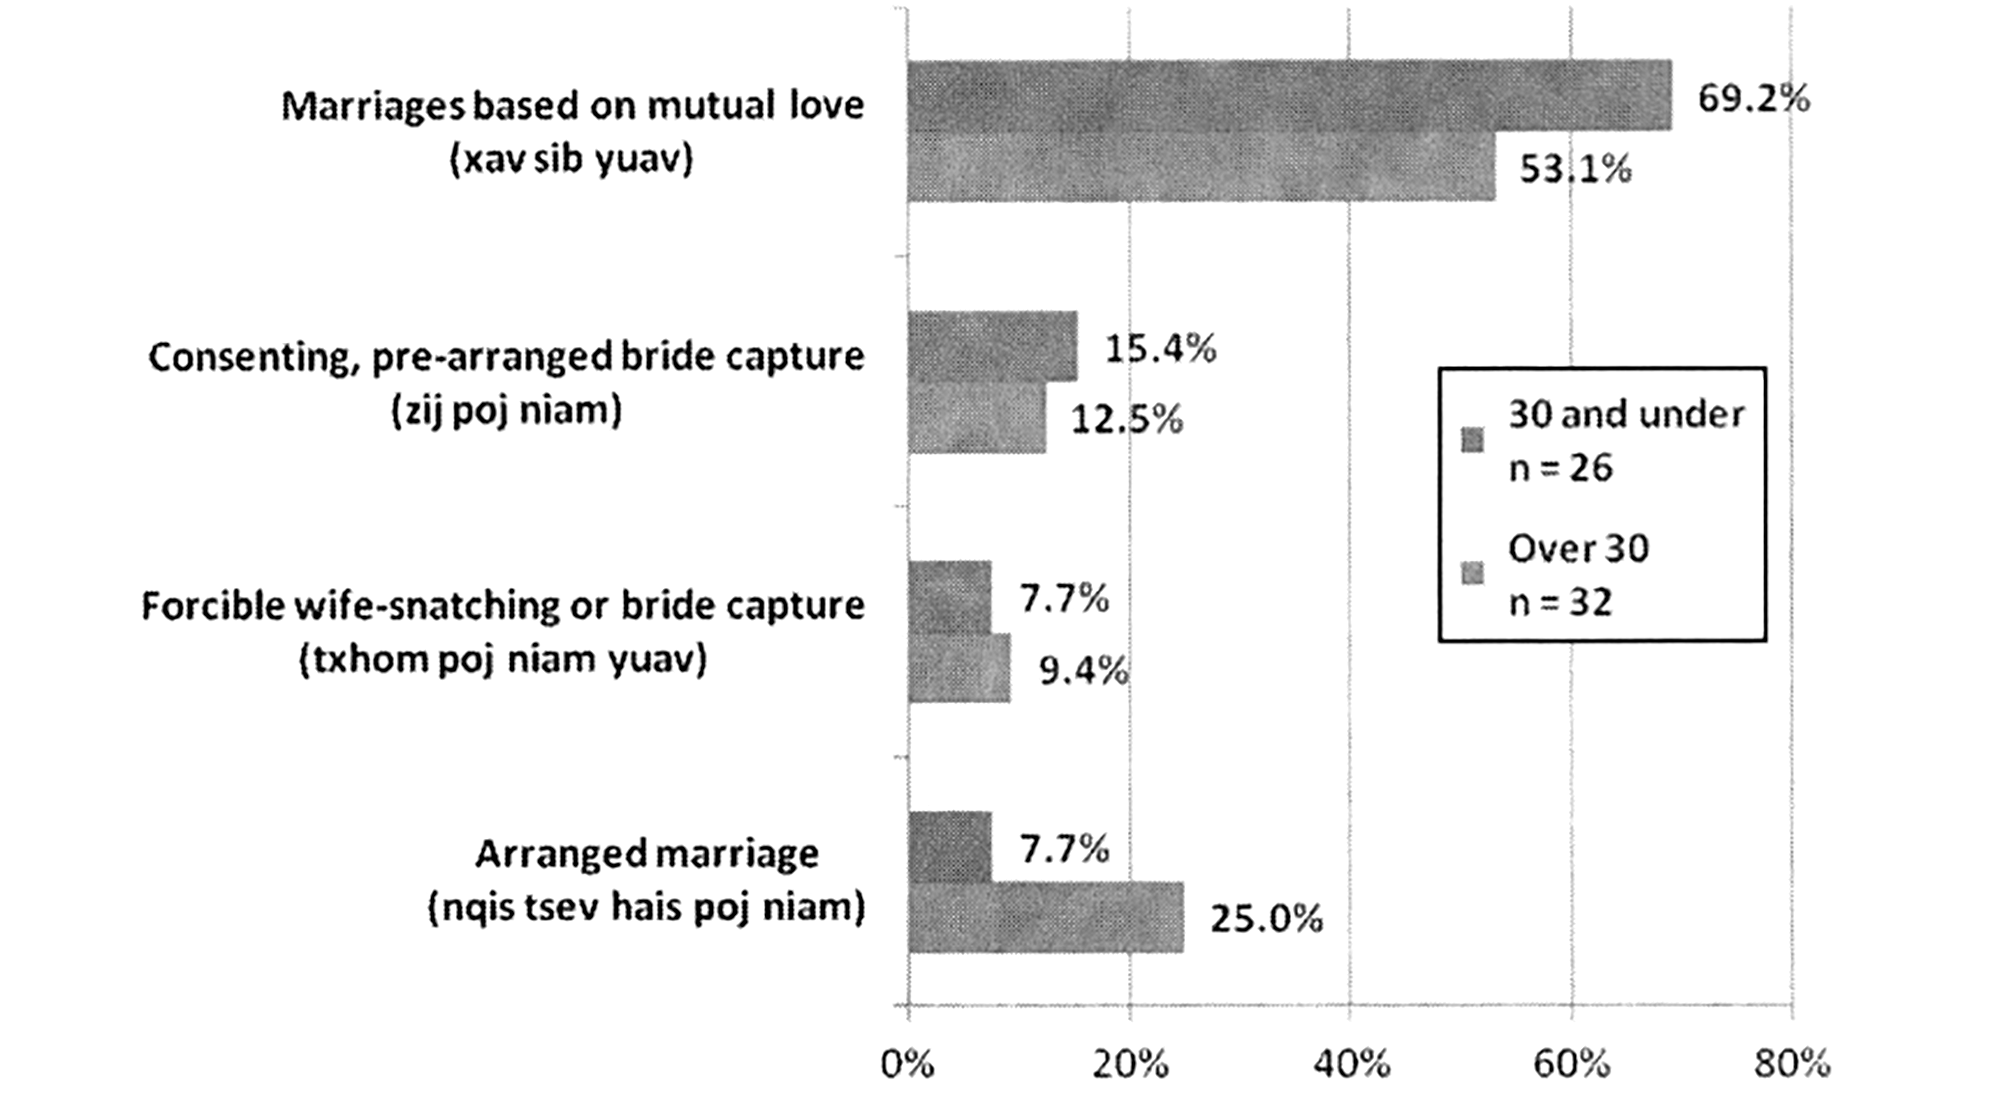 Xu hướng kết hôn dựa trên tình yêu ngày càng tăng ở người Mông Trắng Hà Giang. Nguồn: Nguyễn Thị Hương và các cộng sự, 2011.